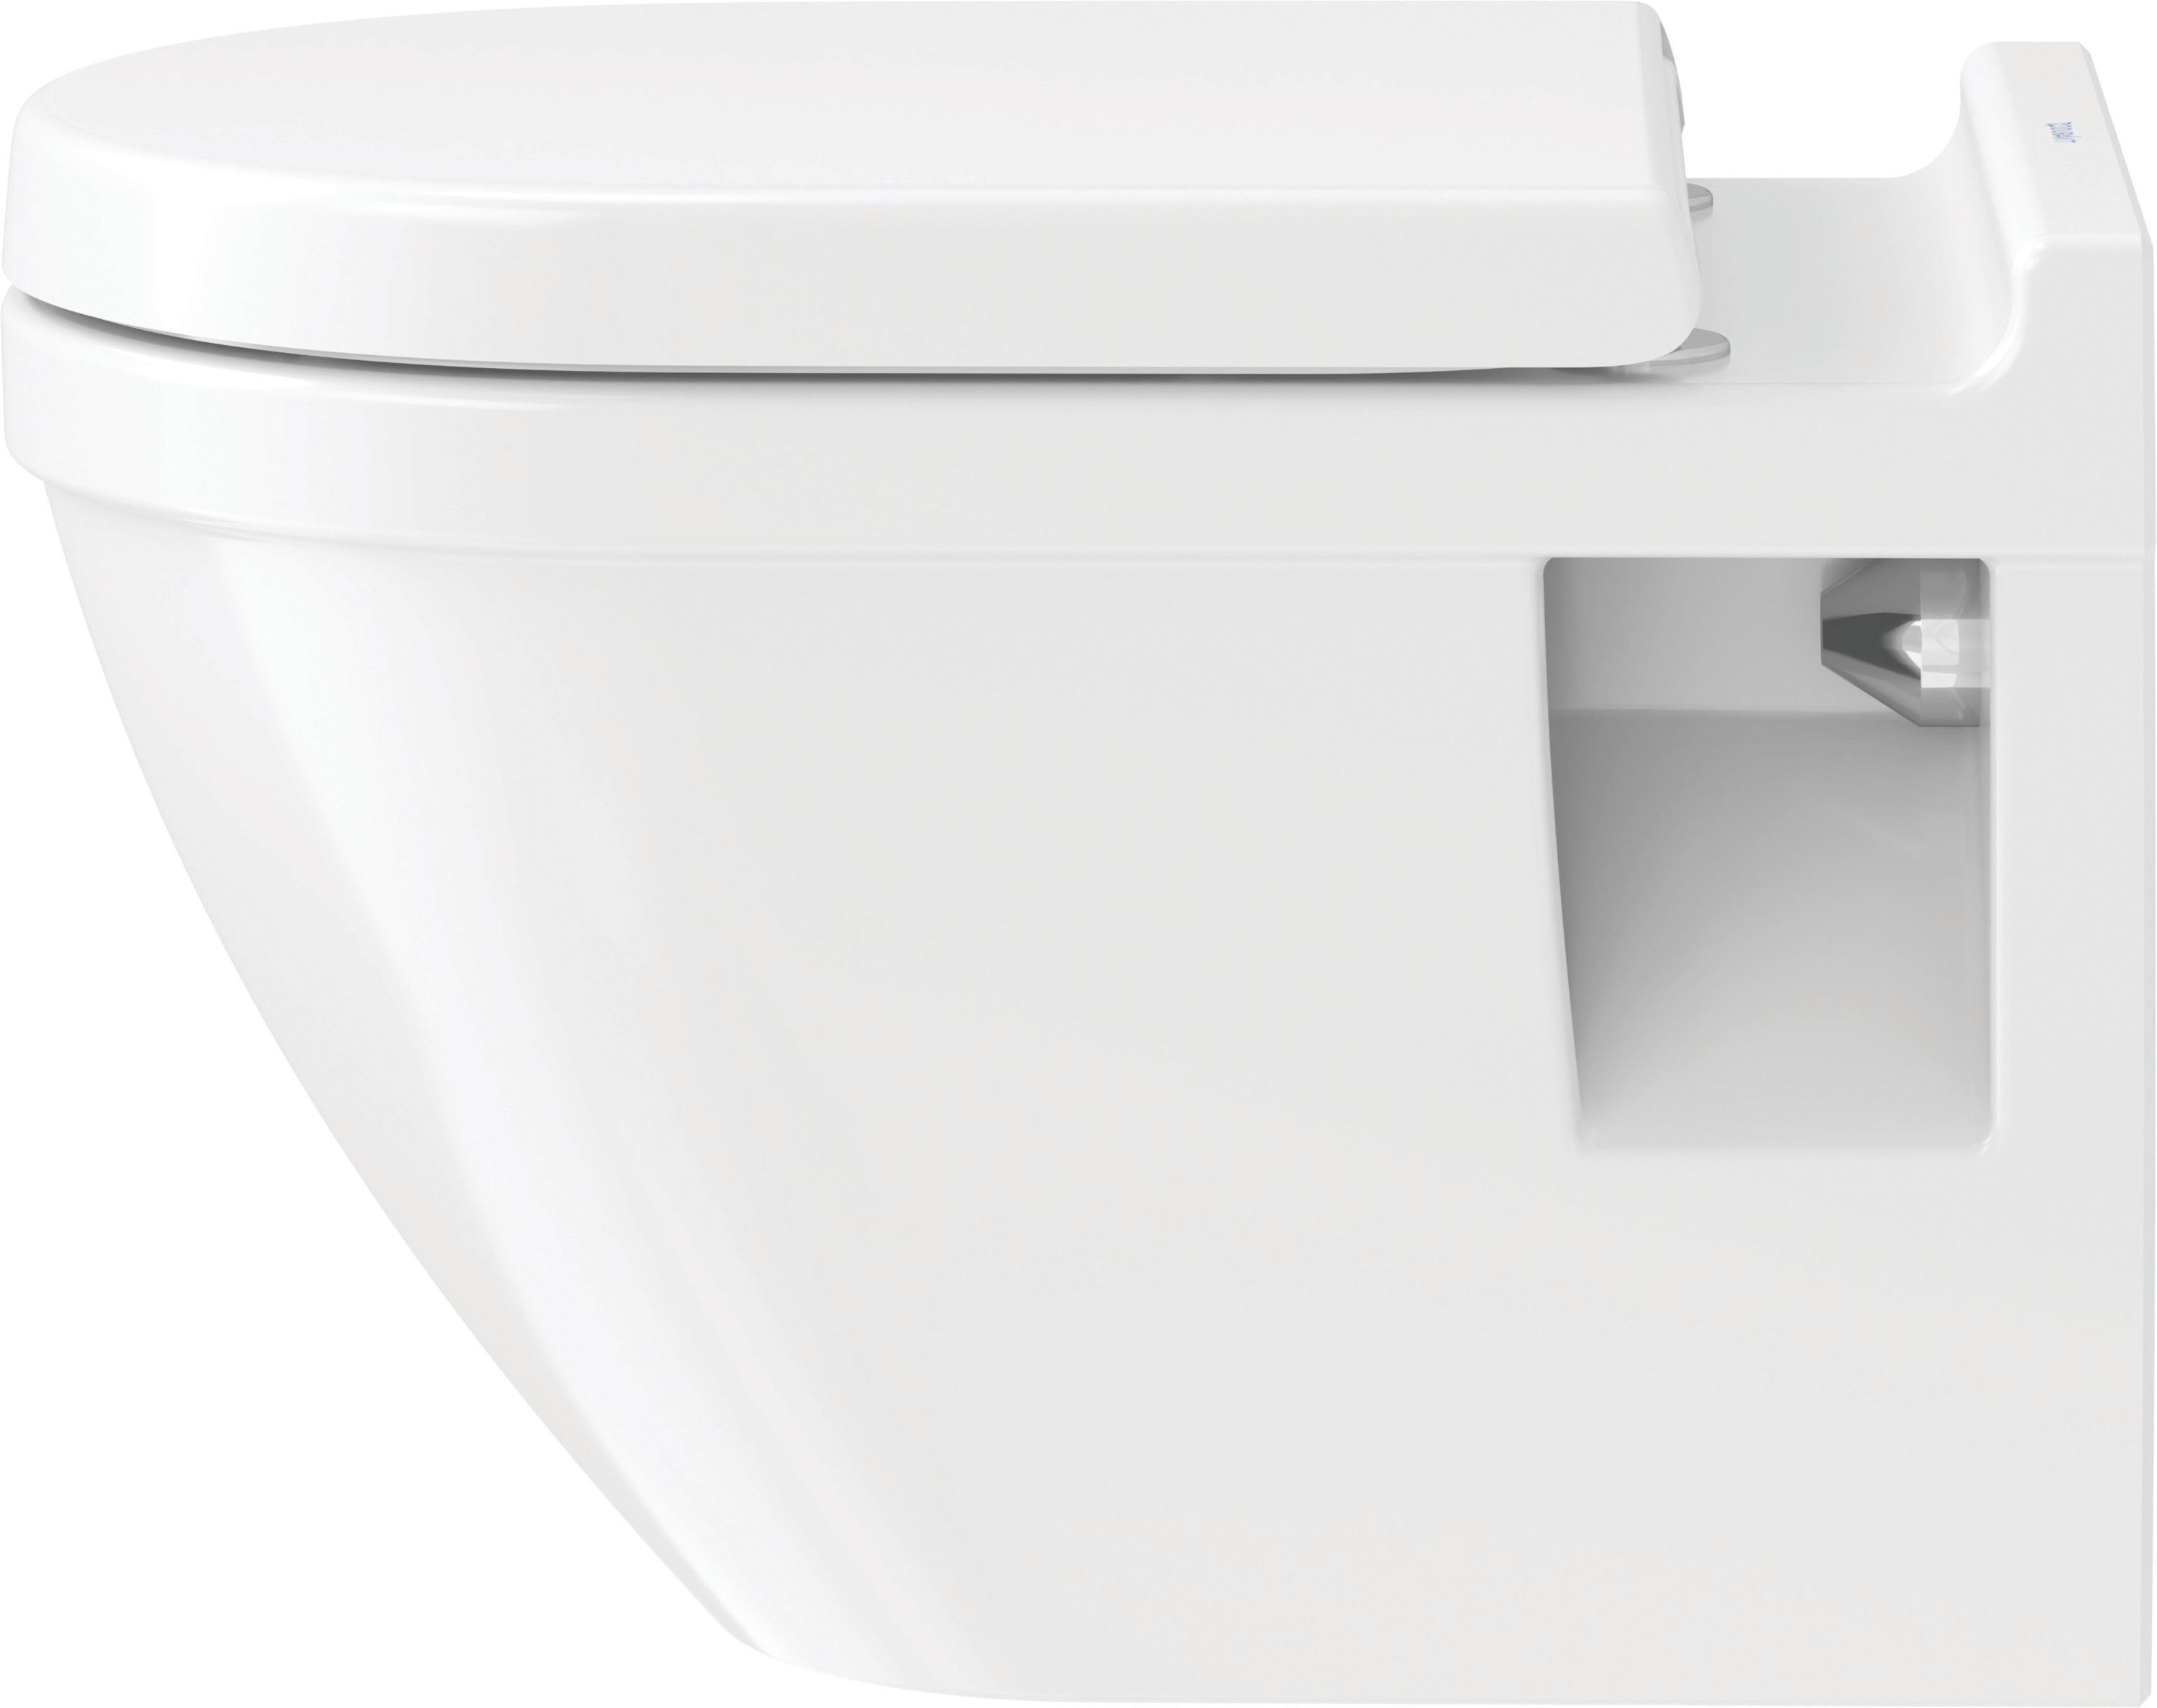 Duravit Wand-Tiefspül-WC inkl. WC-Sitz „Starck 3“ 37 × 54 × 40,5 cm, Befestigung sichtbar